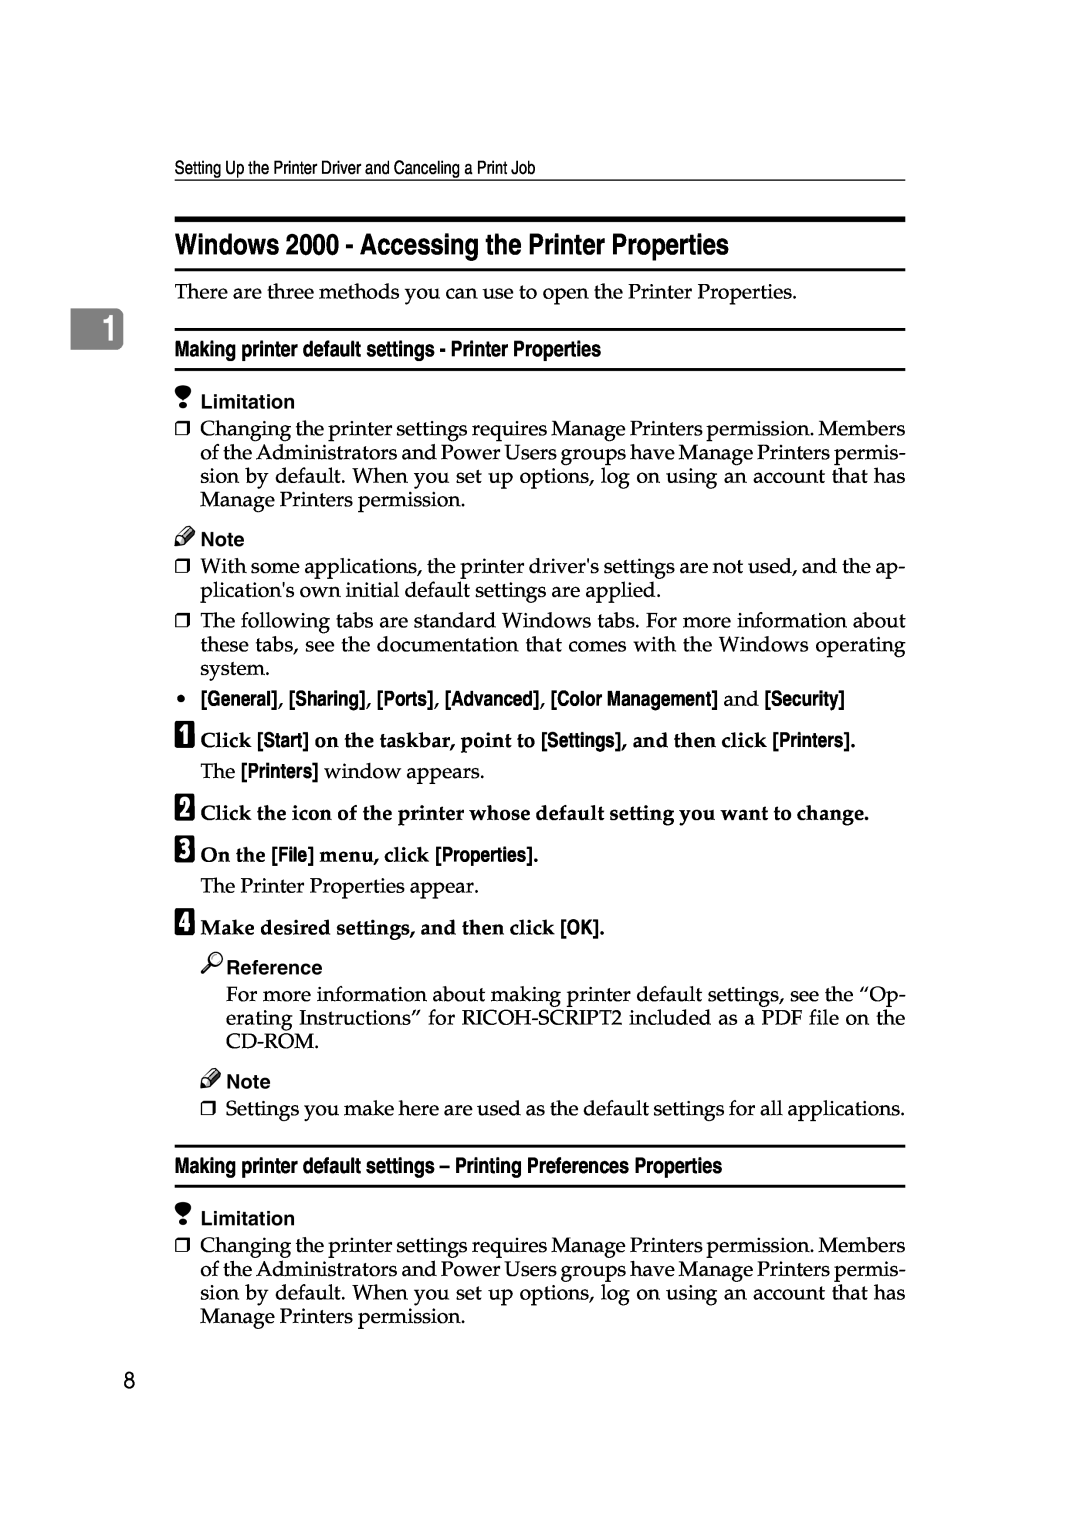 Lanier AP206 manual Windows 2000 - Accessing the Printer Properties, Making printer default settings - Printer Properties 